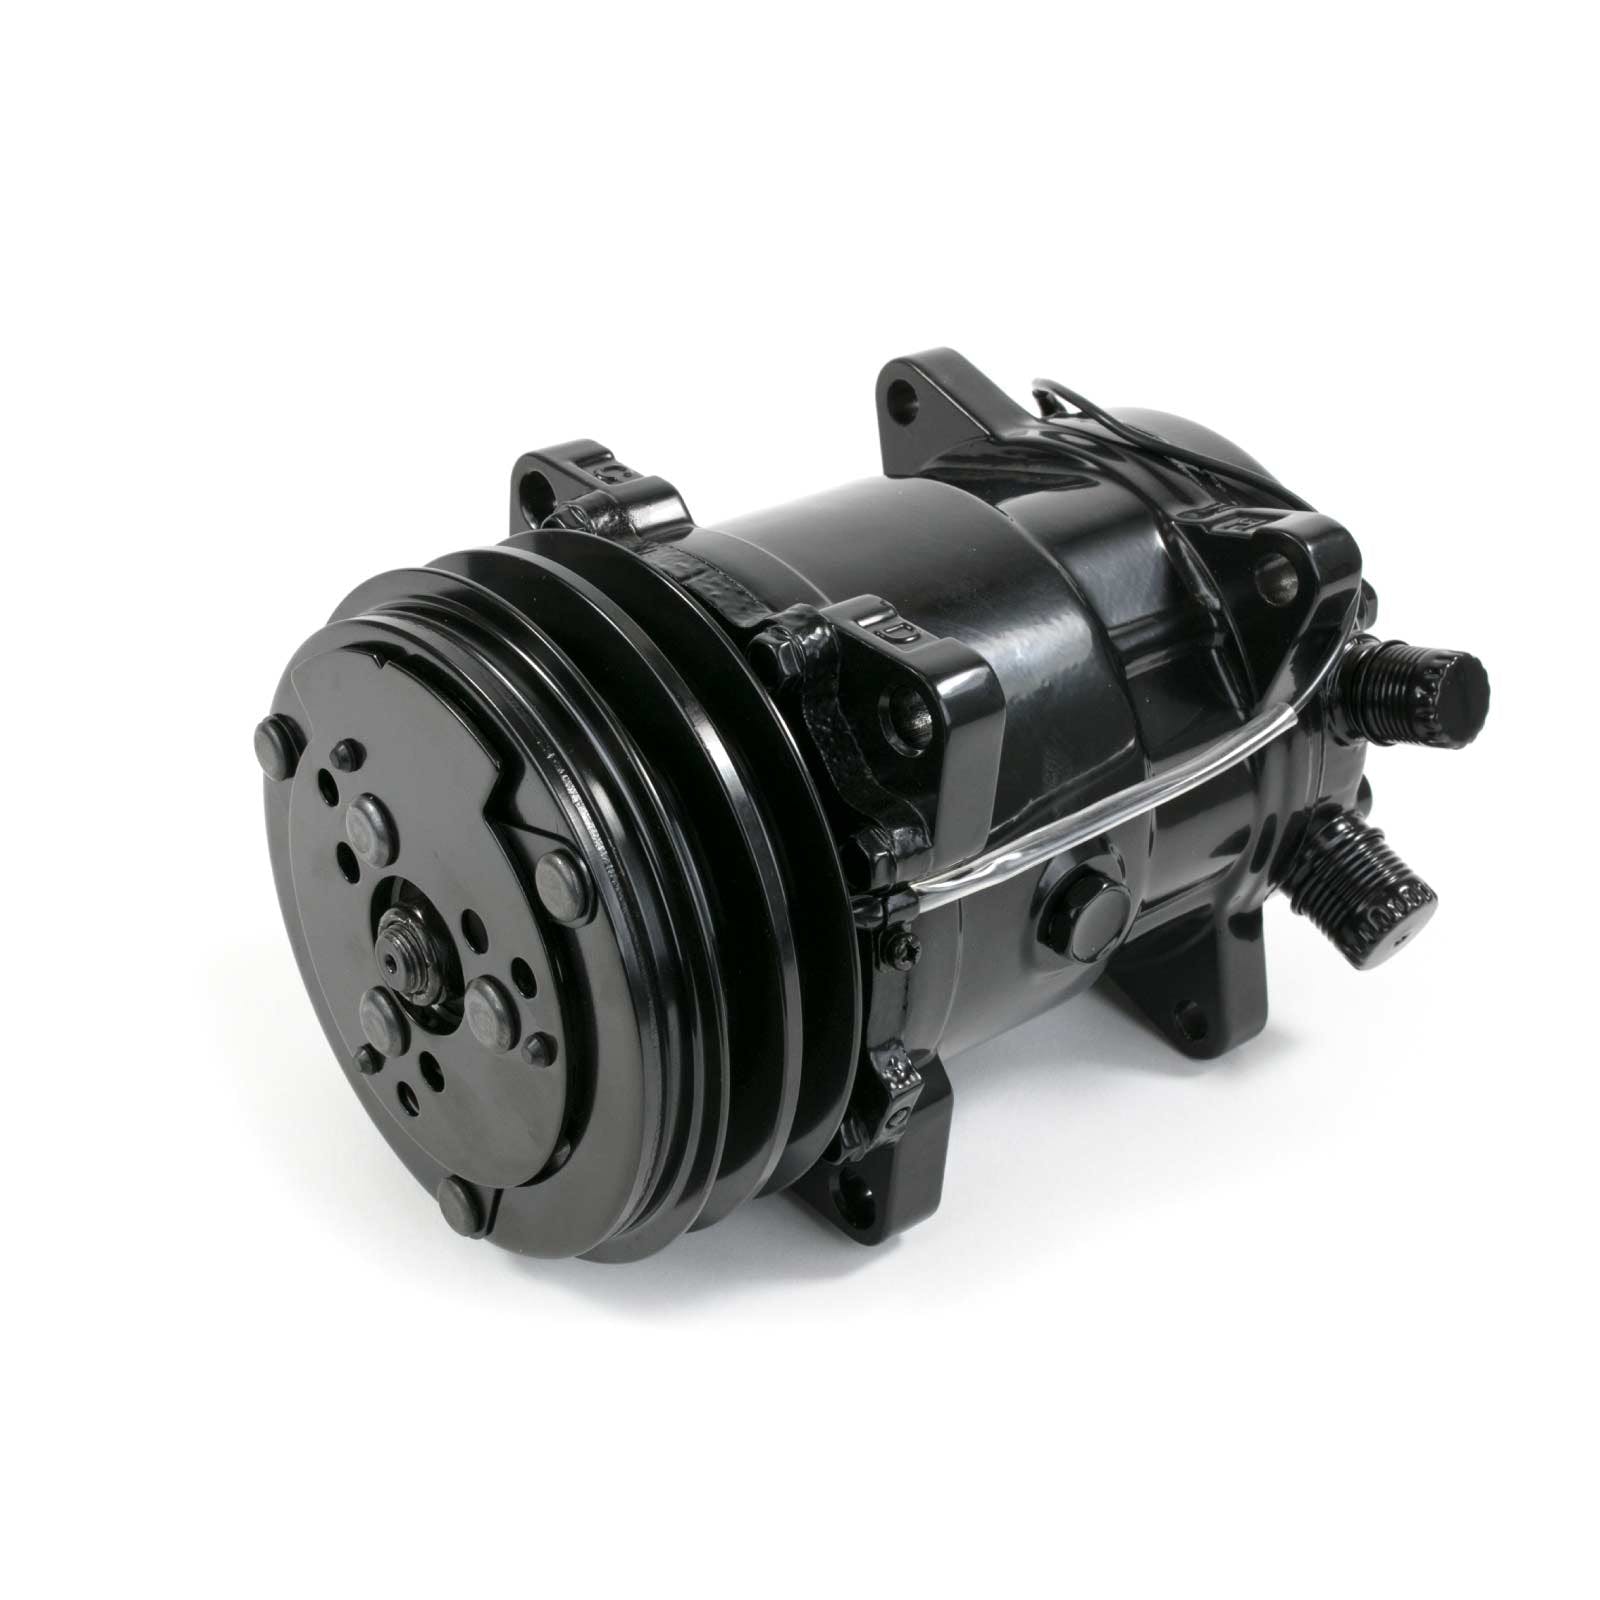 Top Street Performance HC5001BK A/C Compressor, V-Belt, Sanden 508 Style, Black